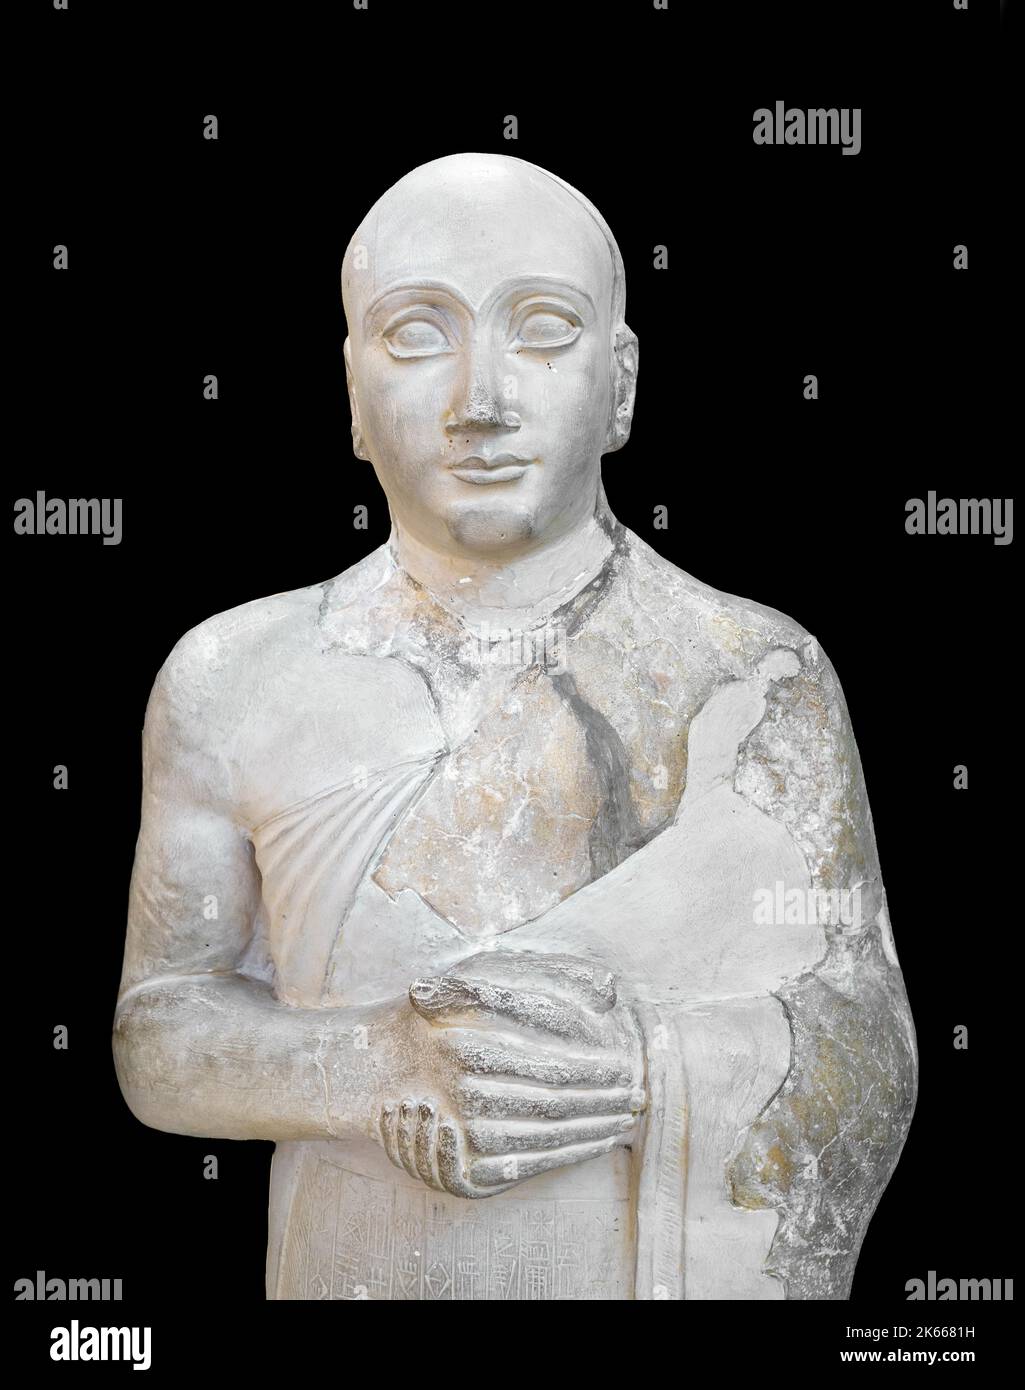 Statua della Gudea nel Museo dell'Antico Oriente, Istanbul. Foto Stock